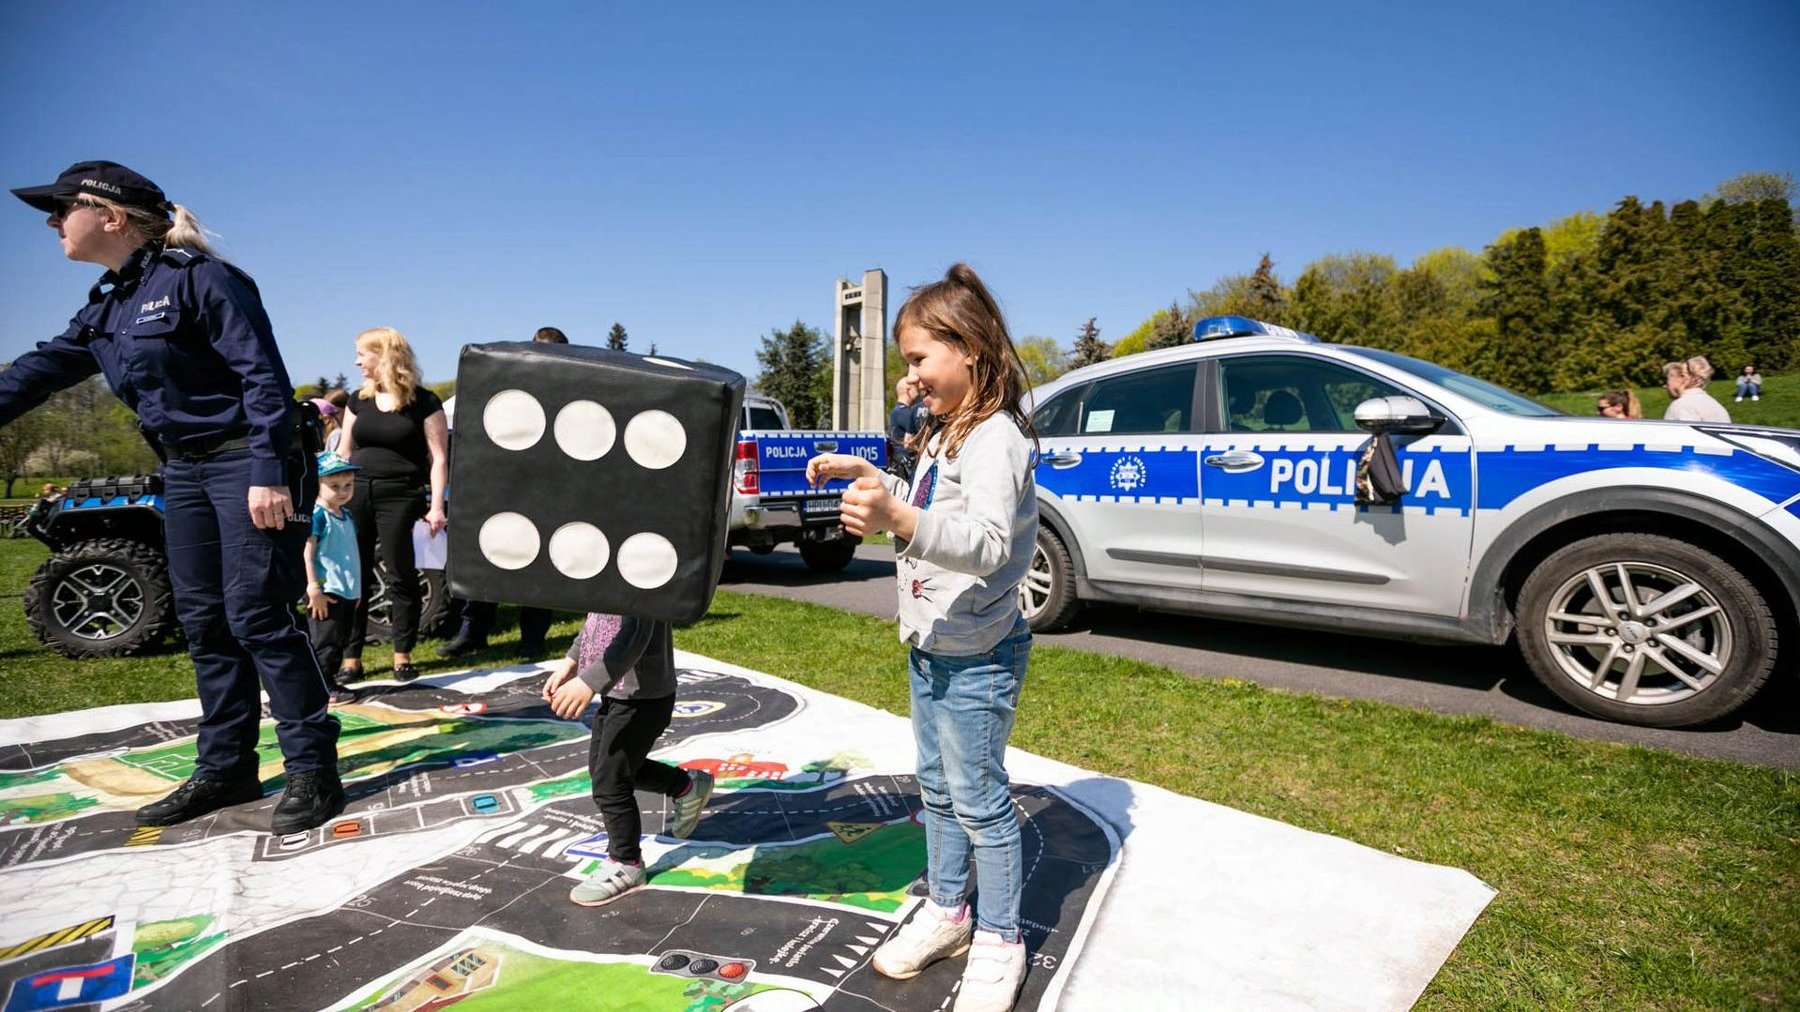 Na zdjęciu bawiące się dzieci, w tle radiowóz policji